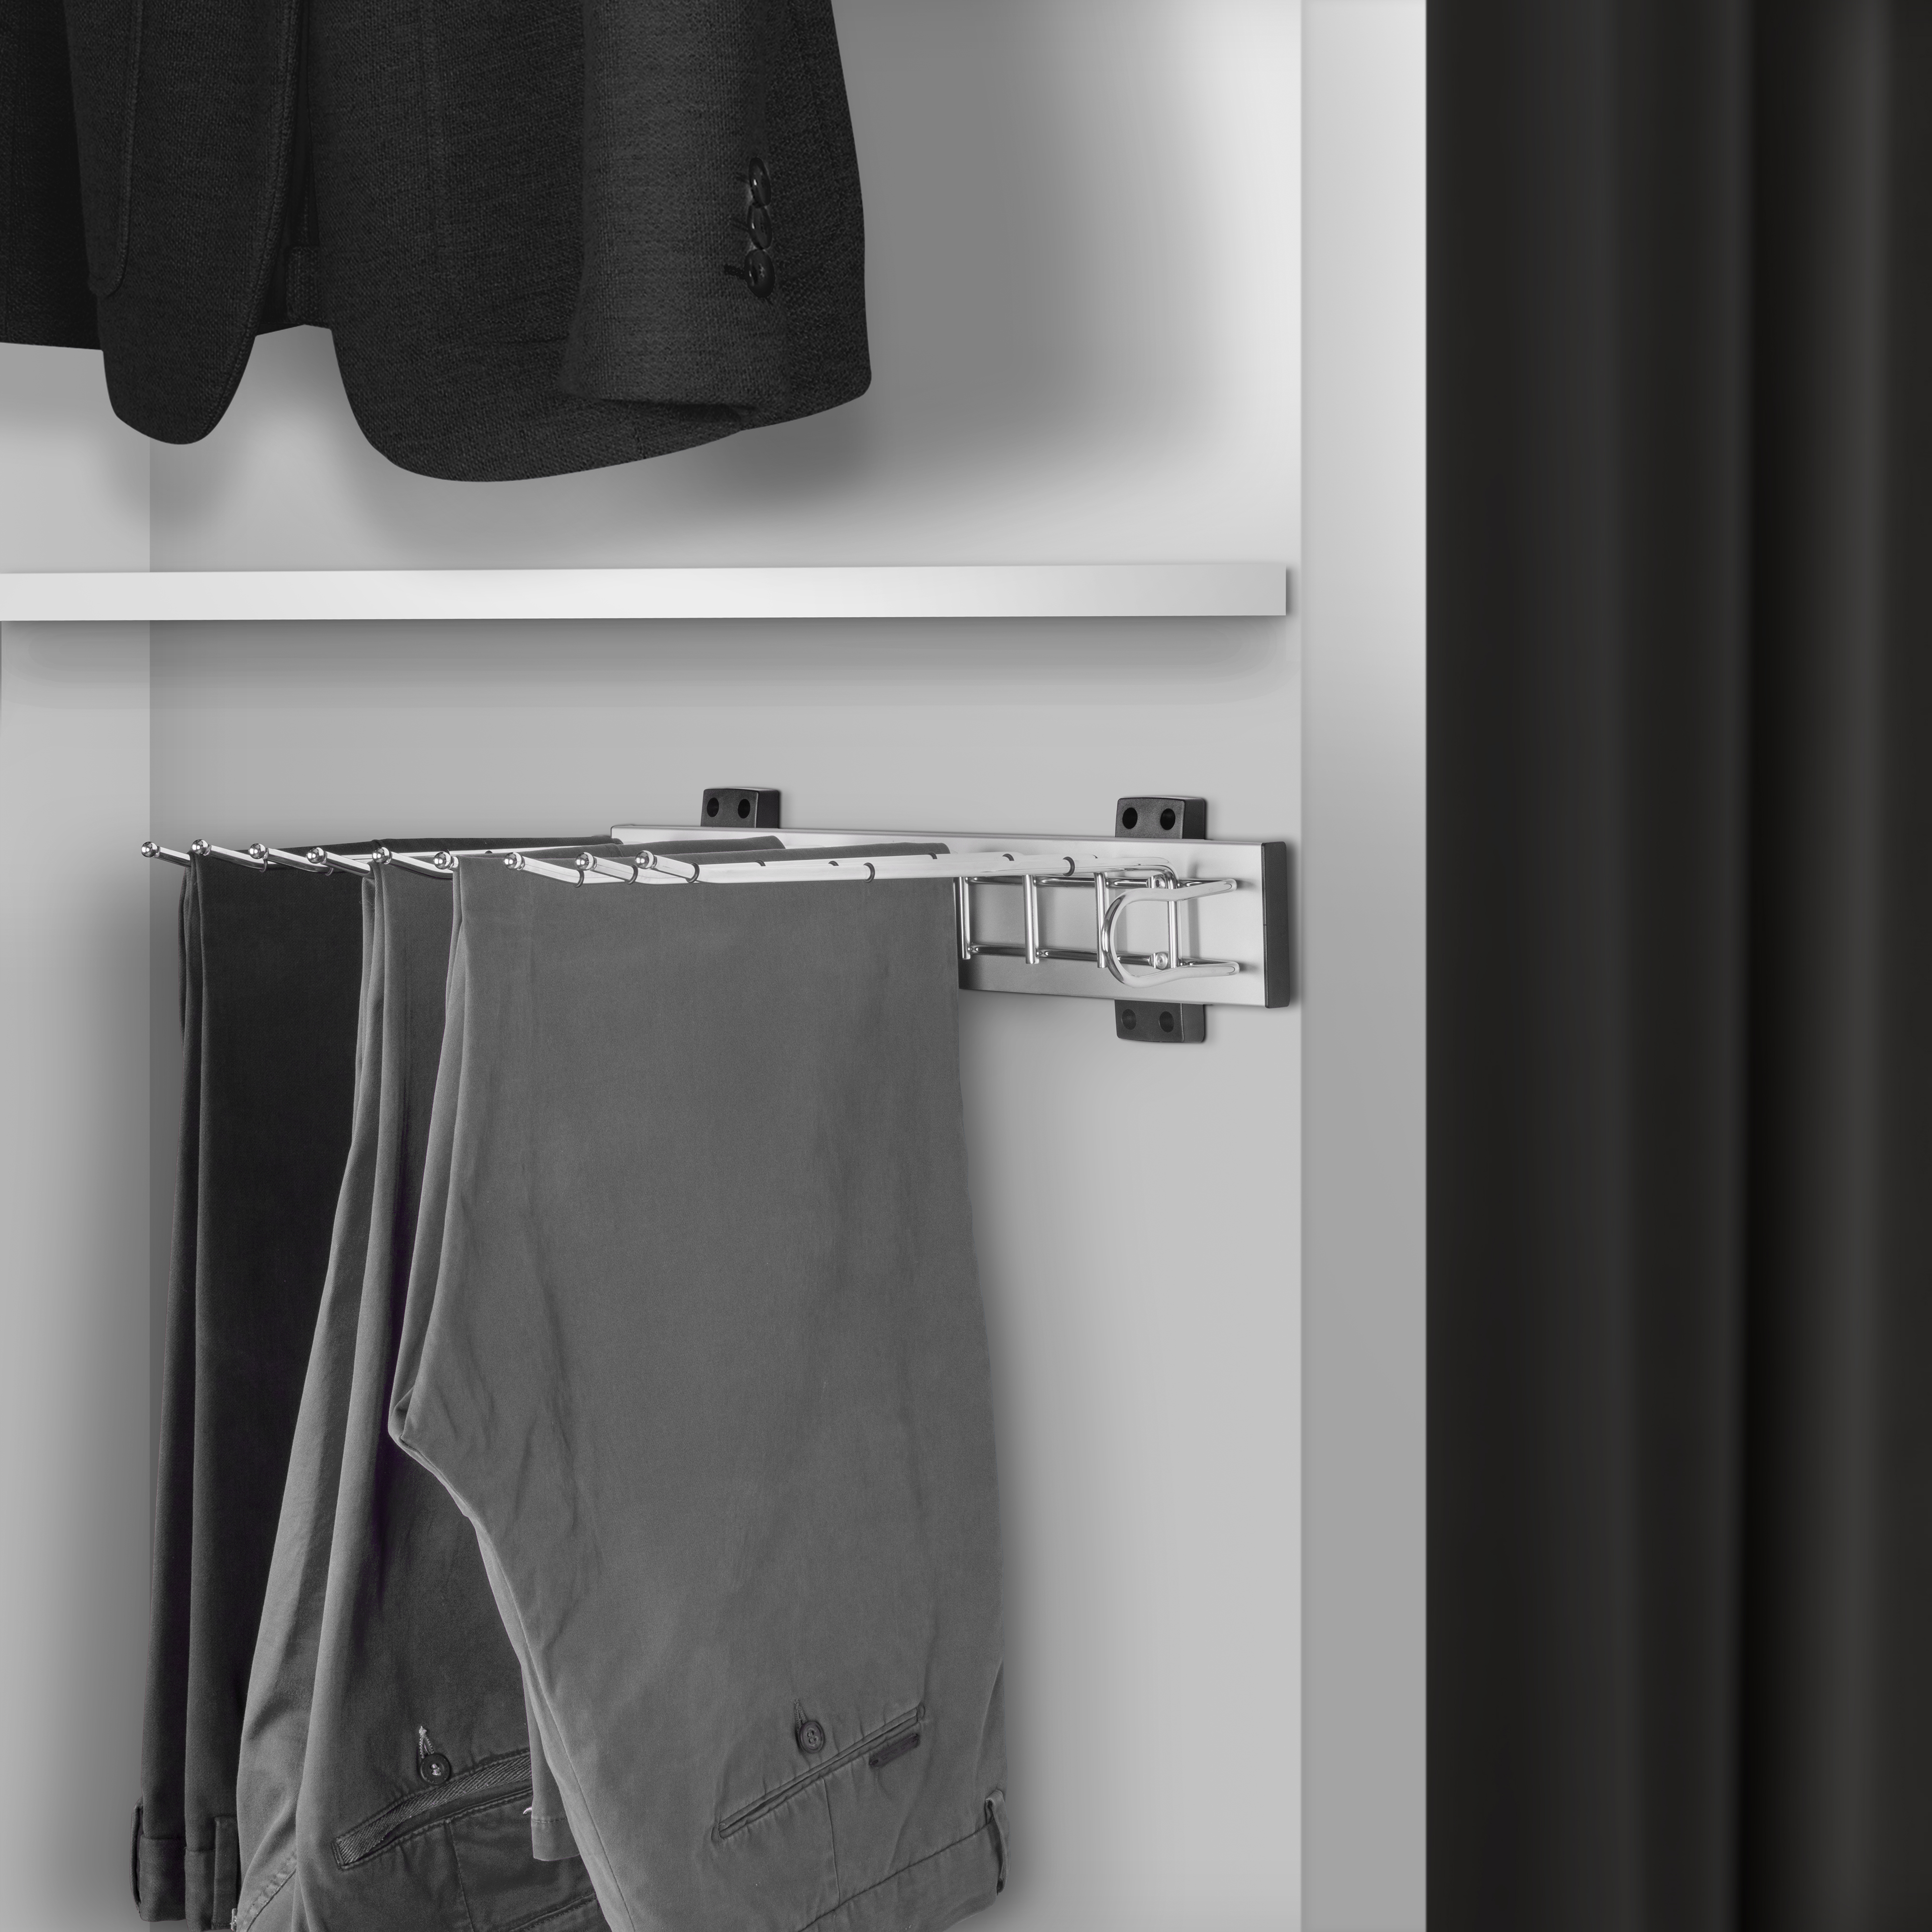  Porte-pantalons Self a montage lateral pour armoire, Droite, Chrome, Acier et Plastique et Aluminium.